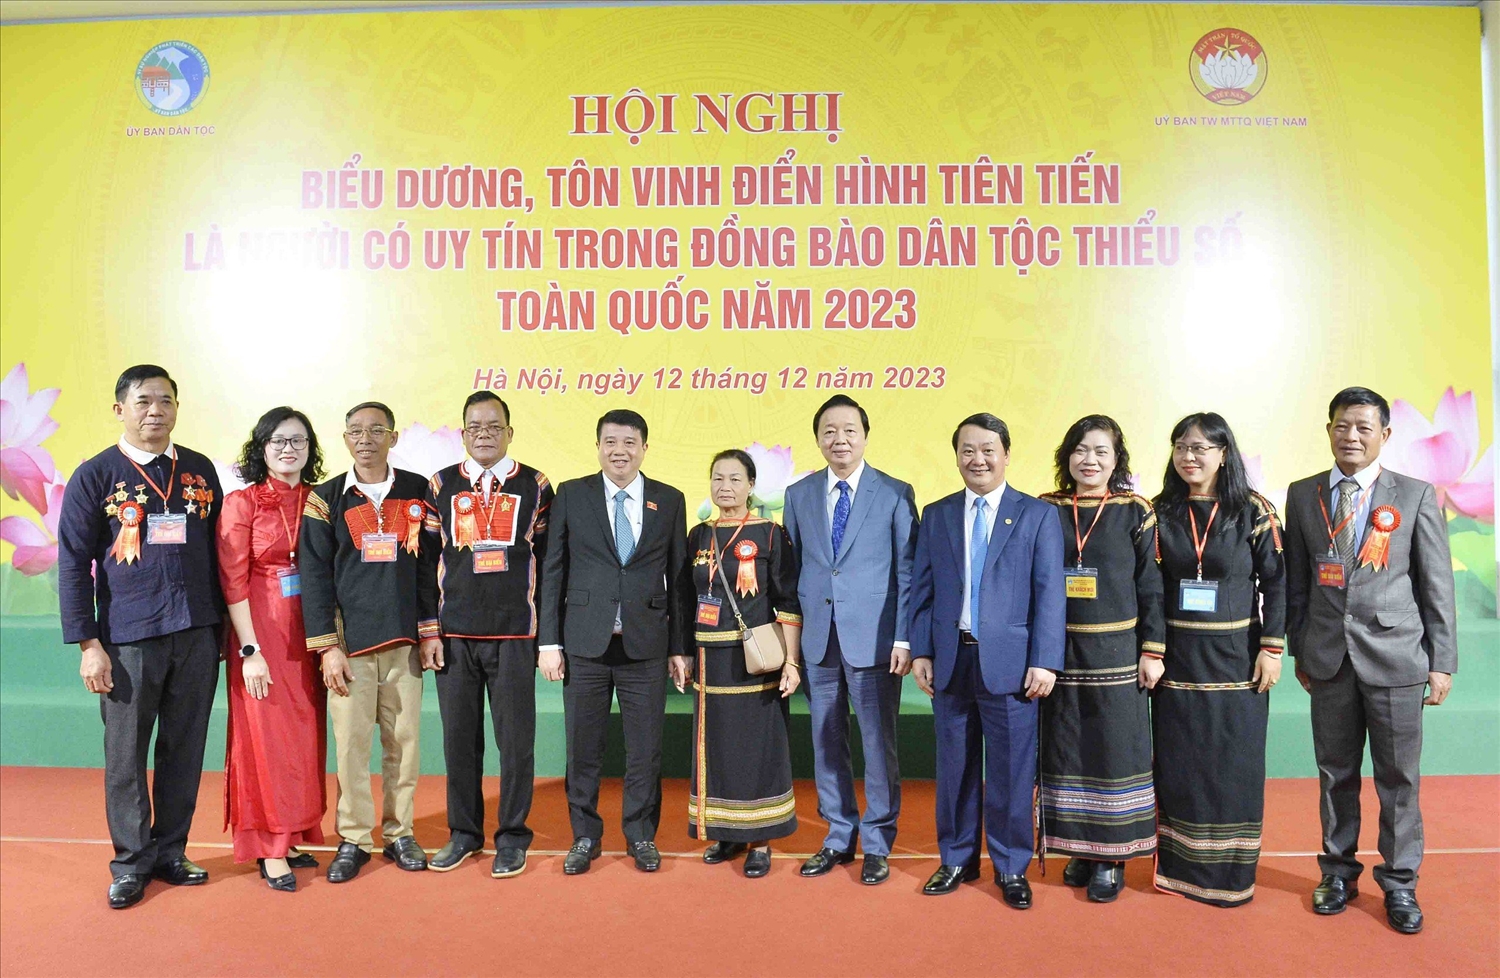 Phó Thủ tướng Trần Hồng Hà và Bộ trưởng, Chủ nhiệm UBND Hầu A Lềnh chụp ảnh lưu niệm với Người có uy tín tại Hội nghị biểu dương, tôn vinh điển hình tiên tiến là Người có uy tín trong đồng bào DTTS toàn quốc năm 2023